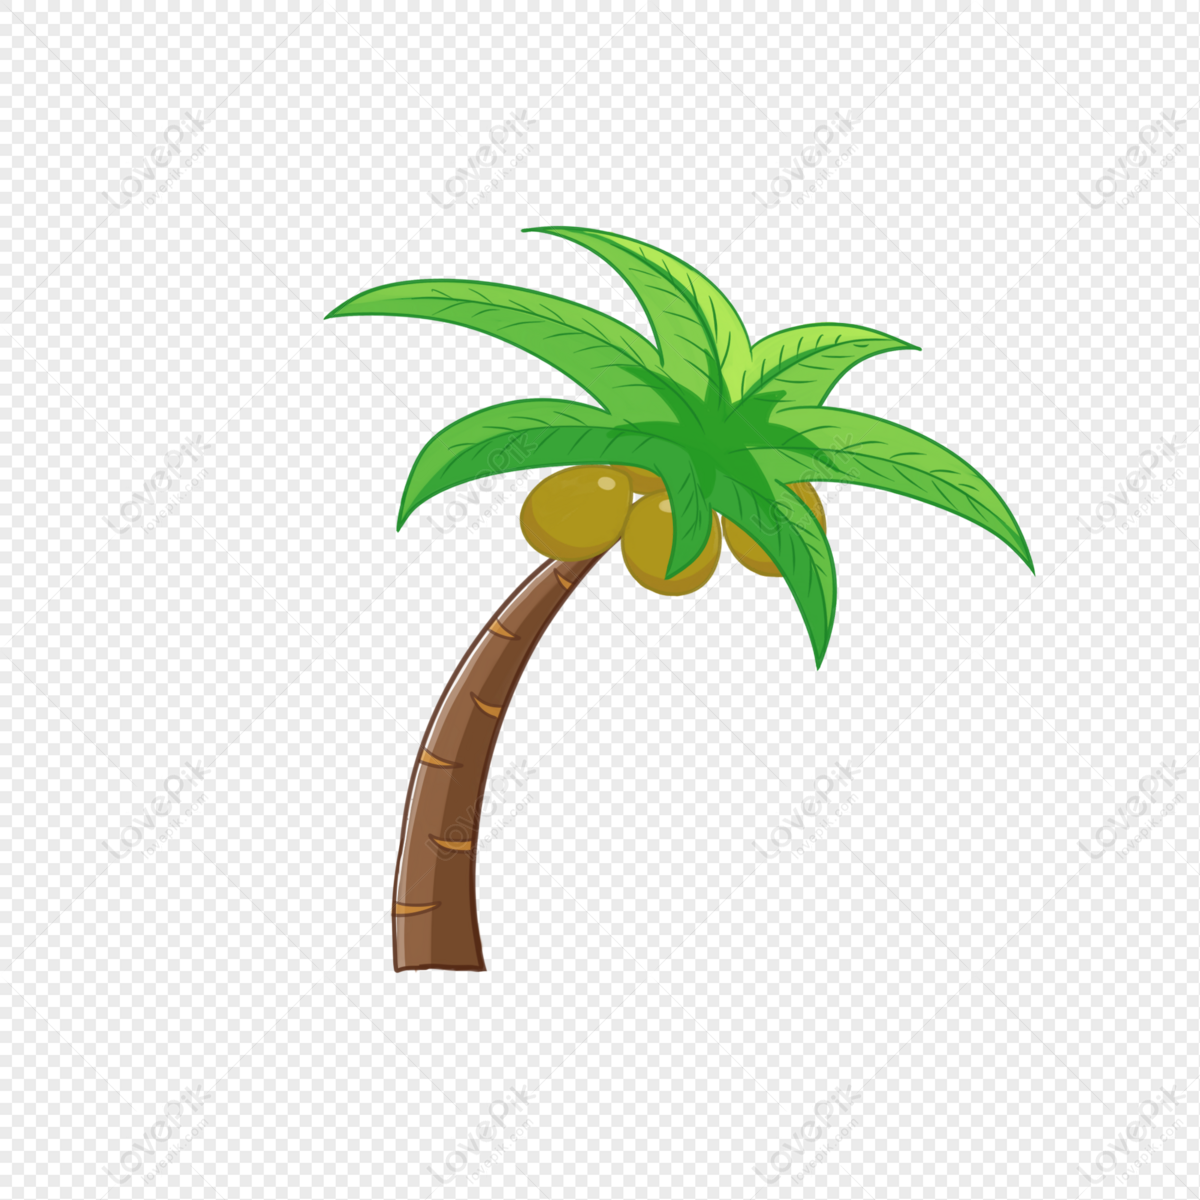 Cây Dừa: Những hình ảnh về cây dừa mang đến cảm giác của một kỳ nghỉ tuyệt vời trên bãi biển. Màu xanh mướt rợp trên hàng dừa cao chóng nhảy múa, đưa bạn vào một không gian xanh mát, nơi bạn có thể thư giãn và cảm nhận một hơi thở của thiên nhiên.